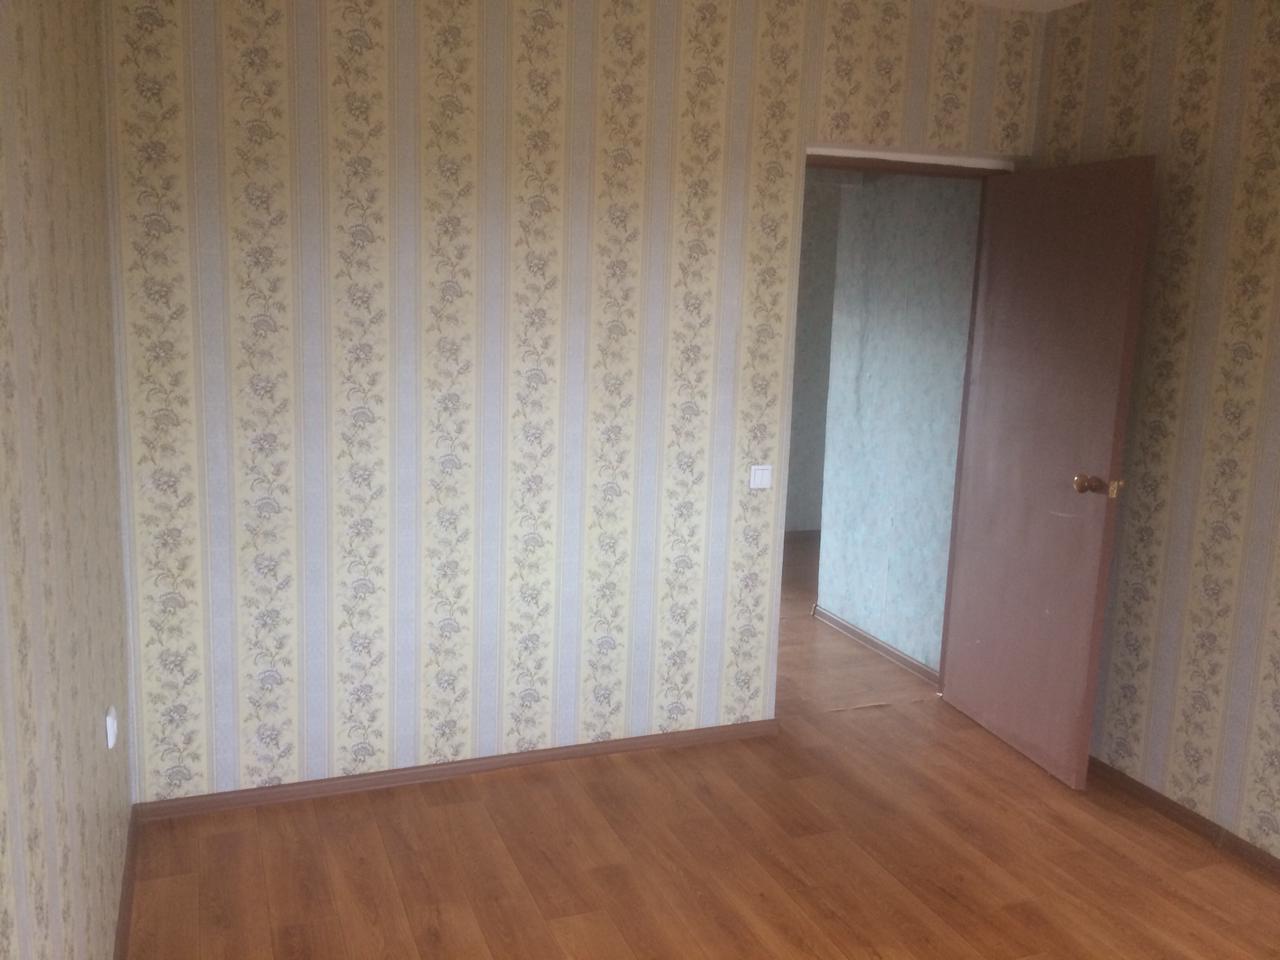 Продается отличная квартира в новом доме в г. Волжске. Квартира большая, светлая, очень теплая.Окна стеклопакет,... - 2